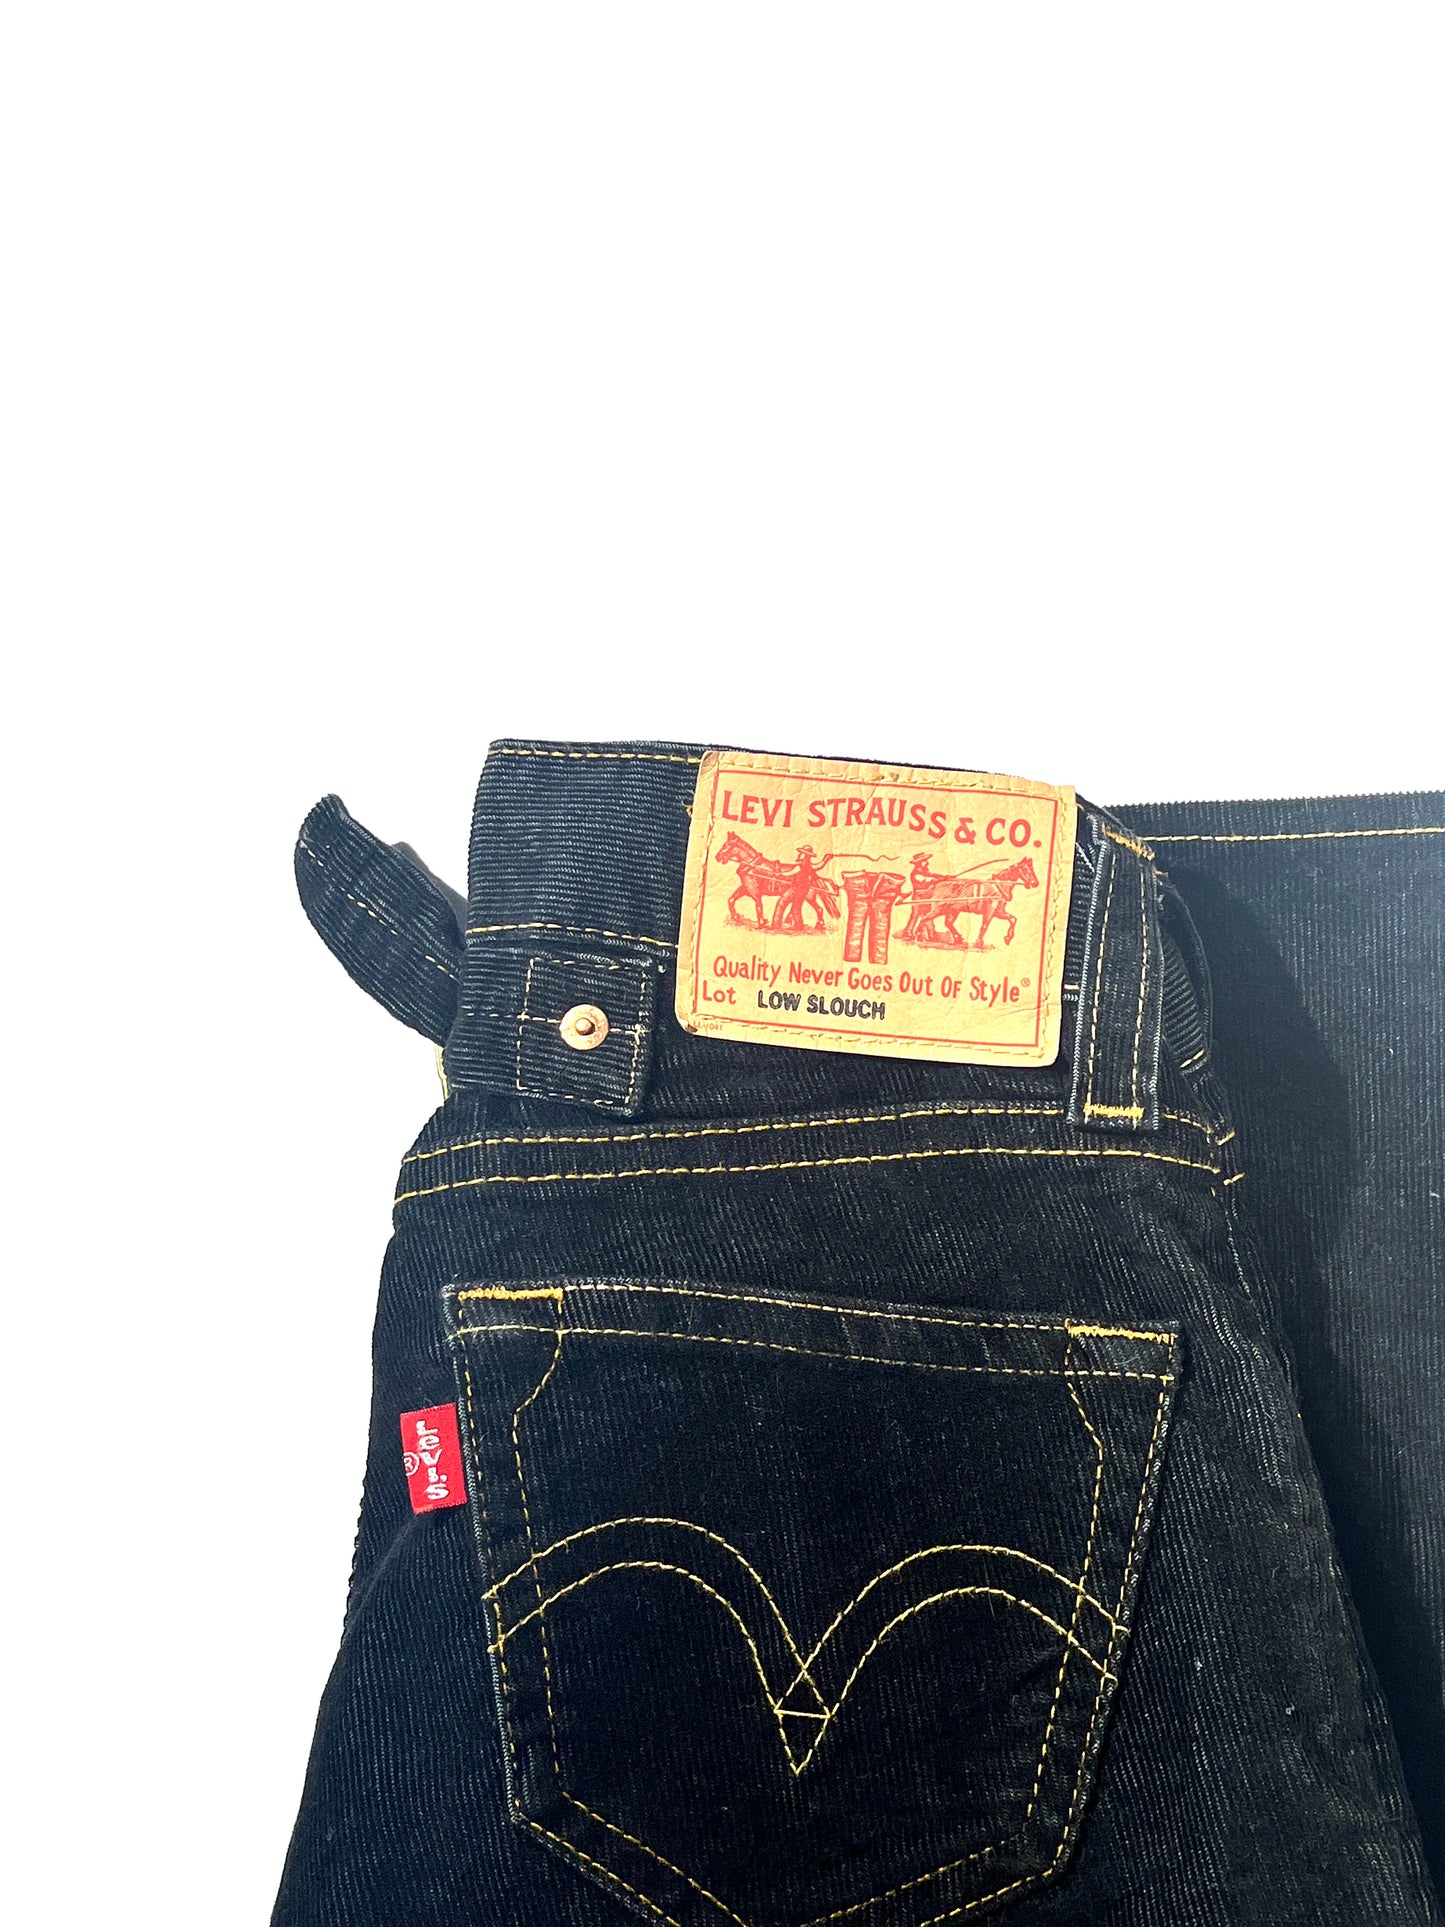 Vintage Levis Jeans Corduroy Low Slouch Pants